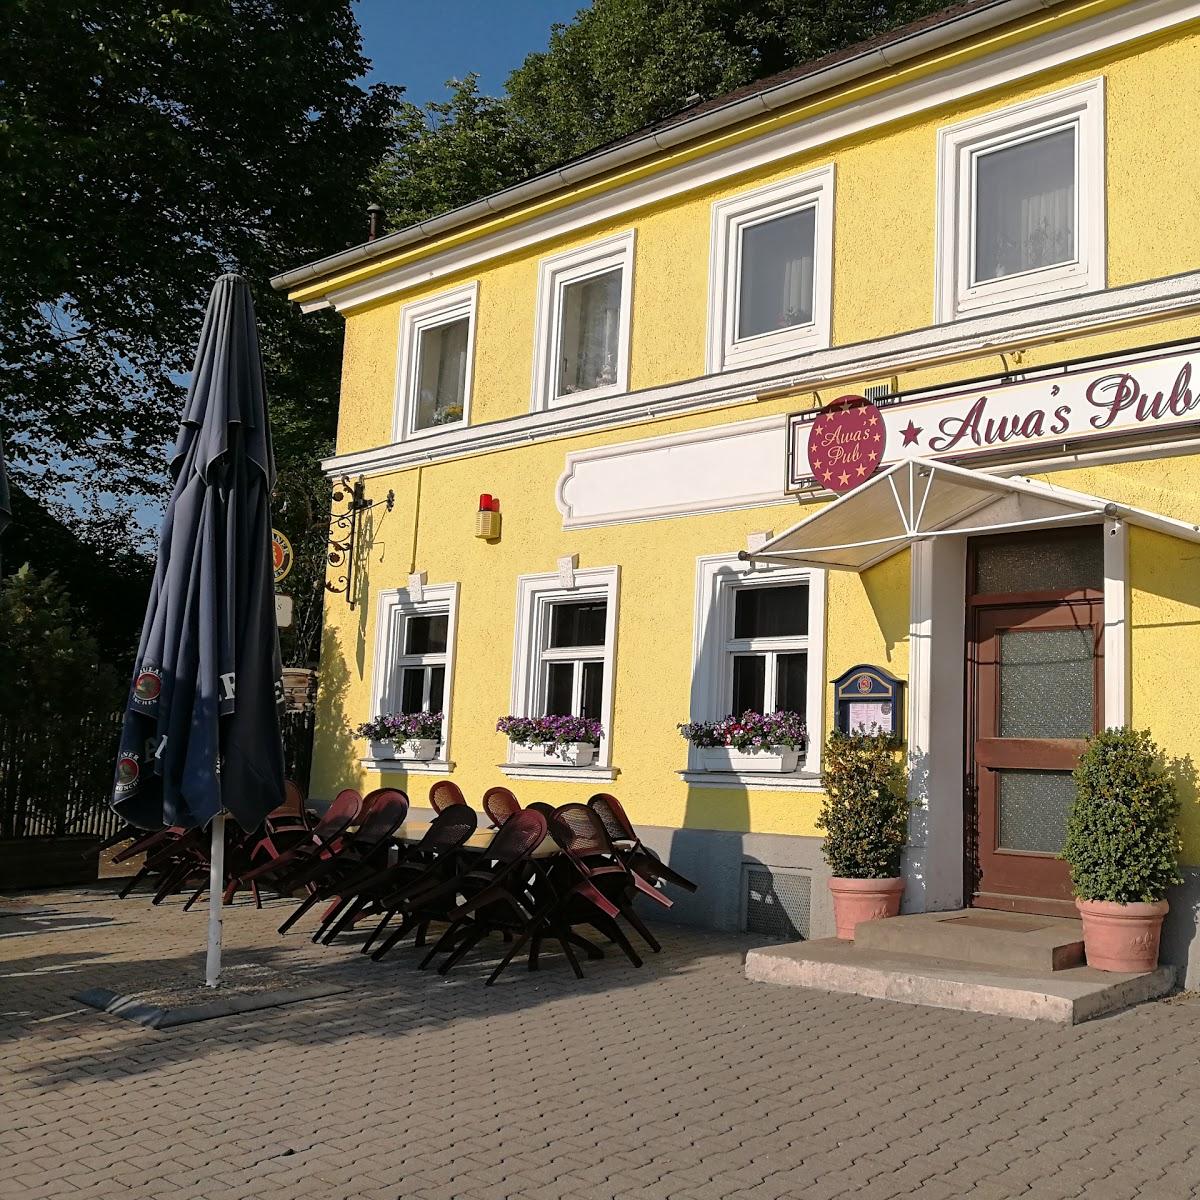 Restaurant "Awas Pub" in Holzkirchen